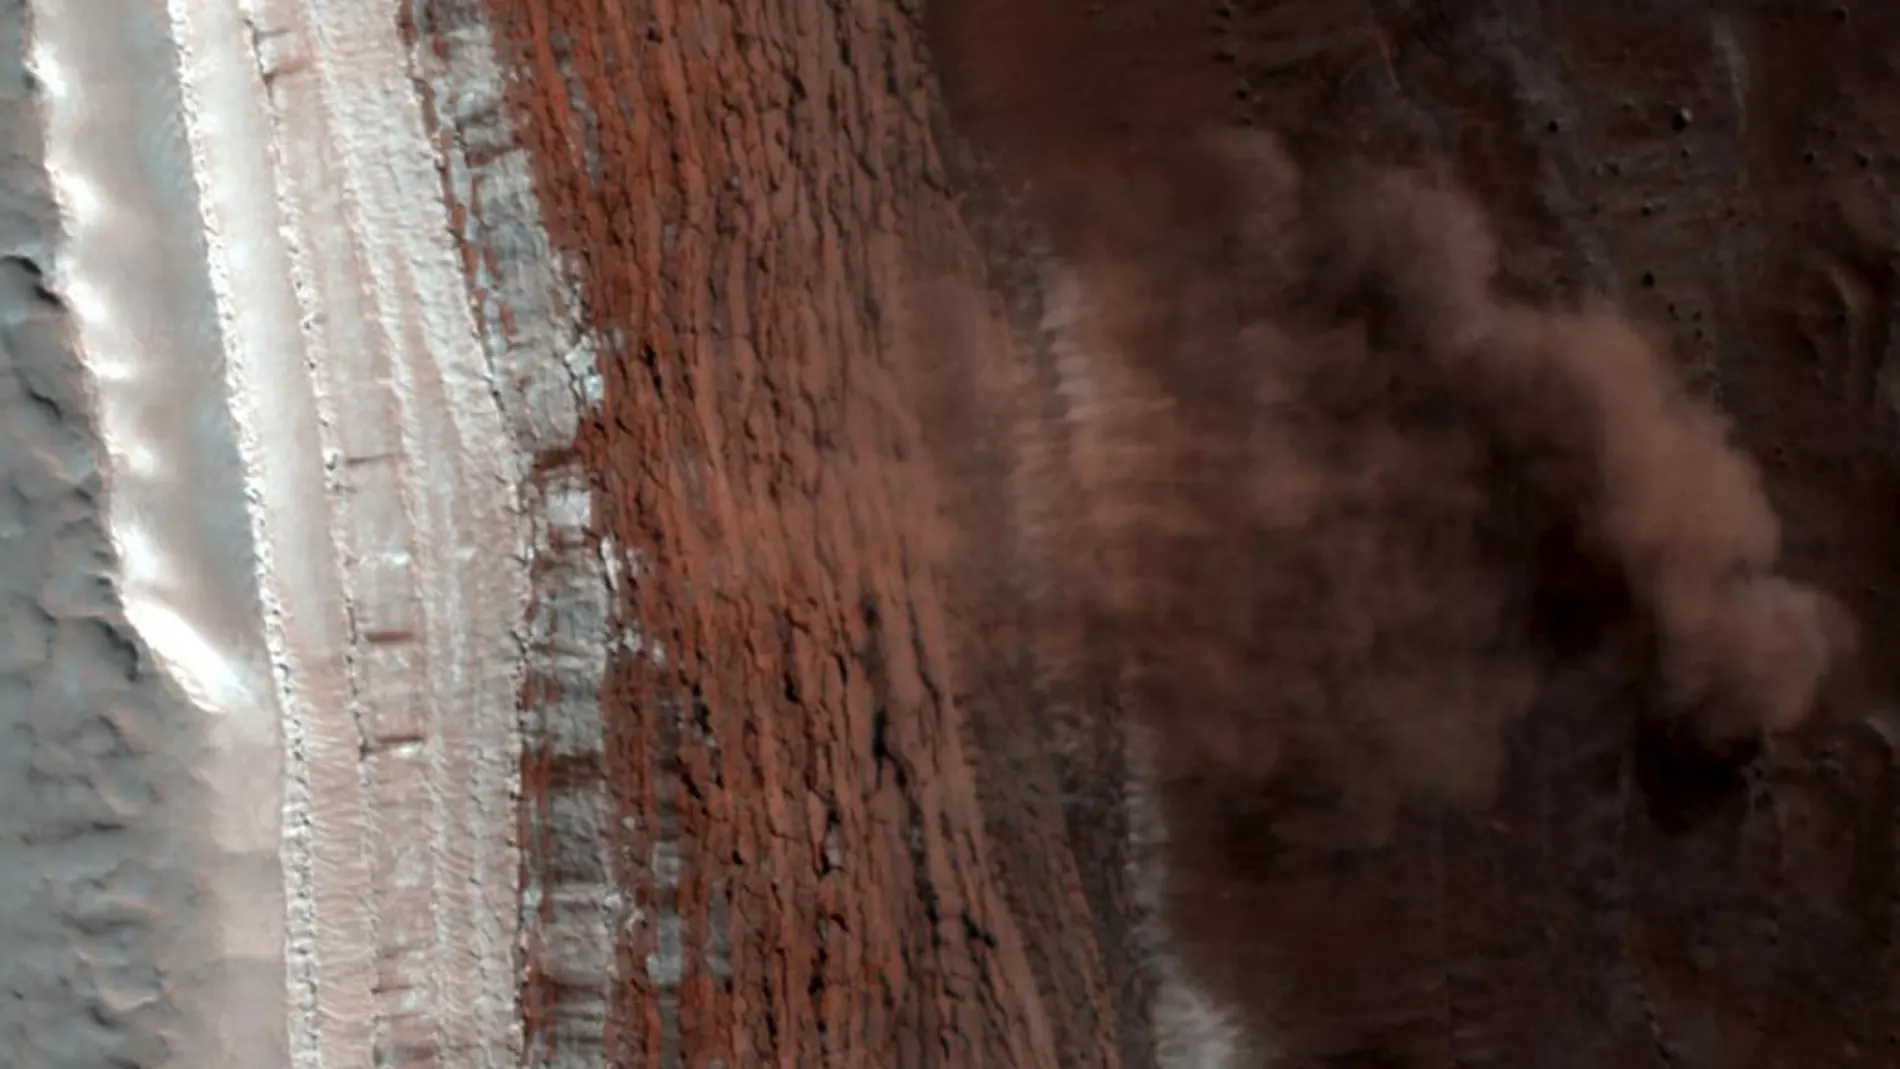 Detalle de la superficie marciana tomada a través de los datos de la Mars Reconnaissance Orbiter